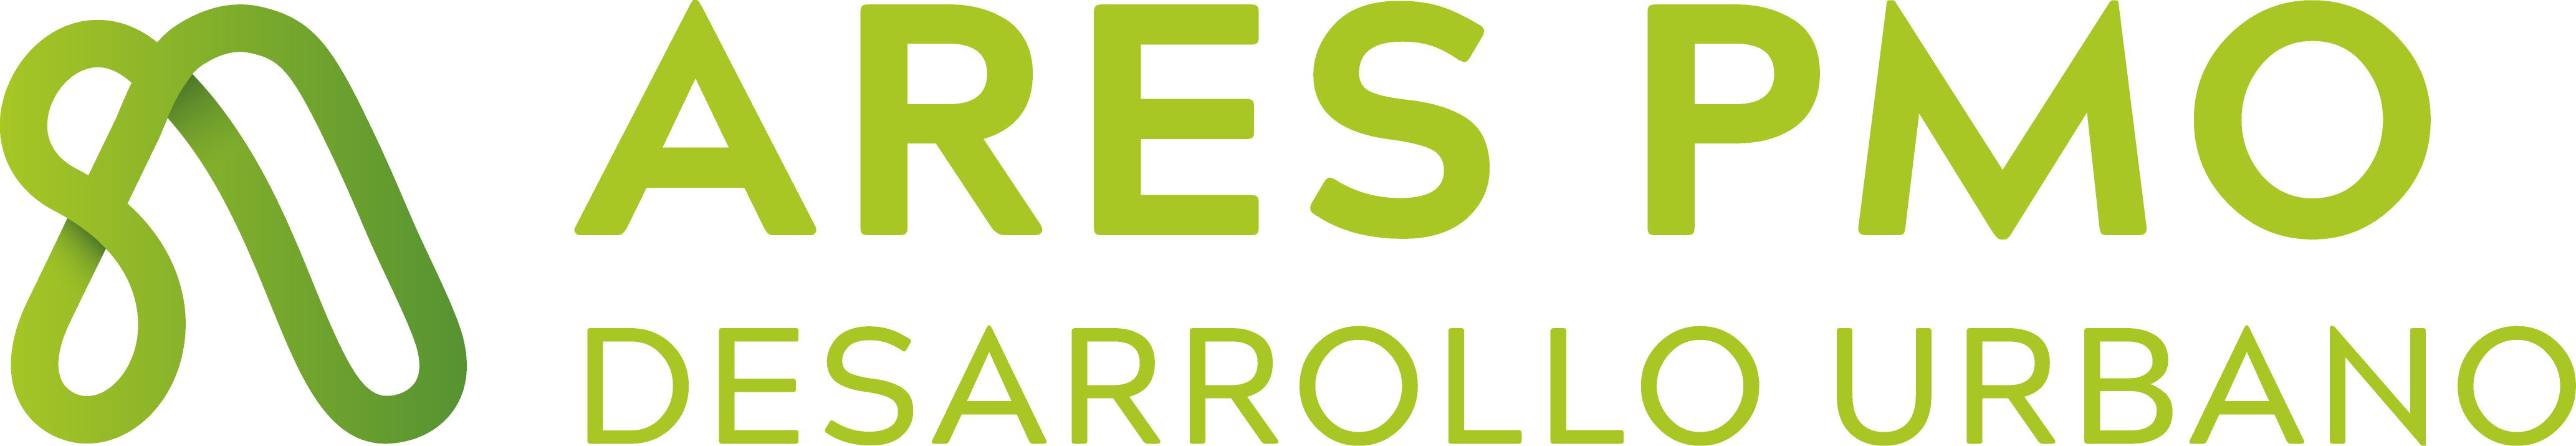 Logo Ares PMO Desarrollo Urbano